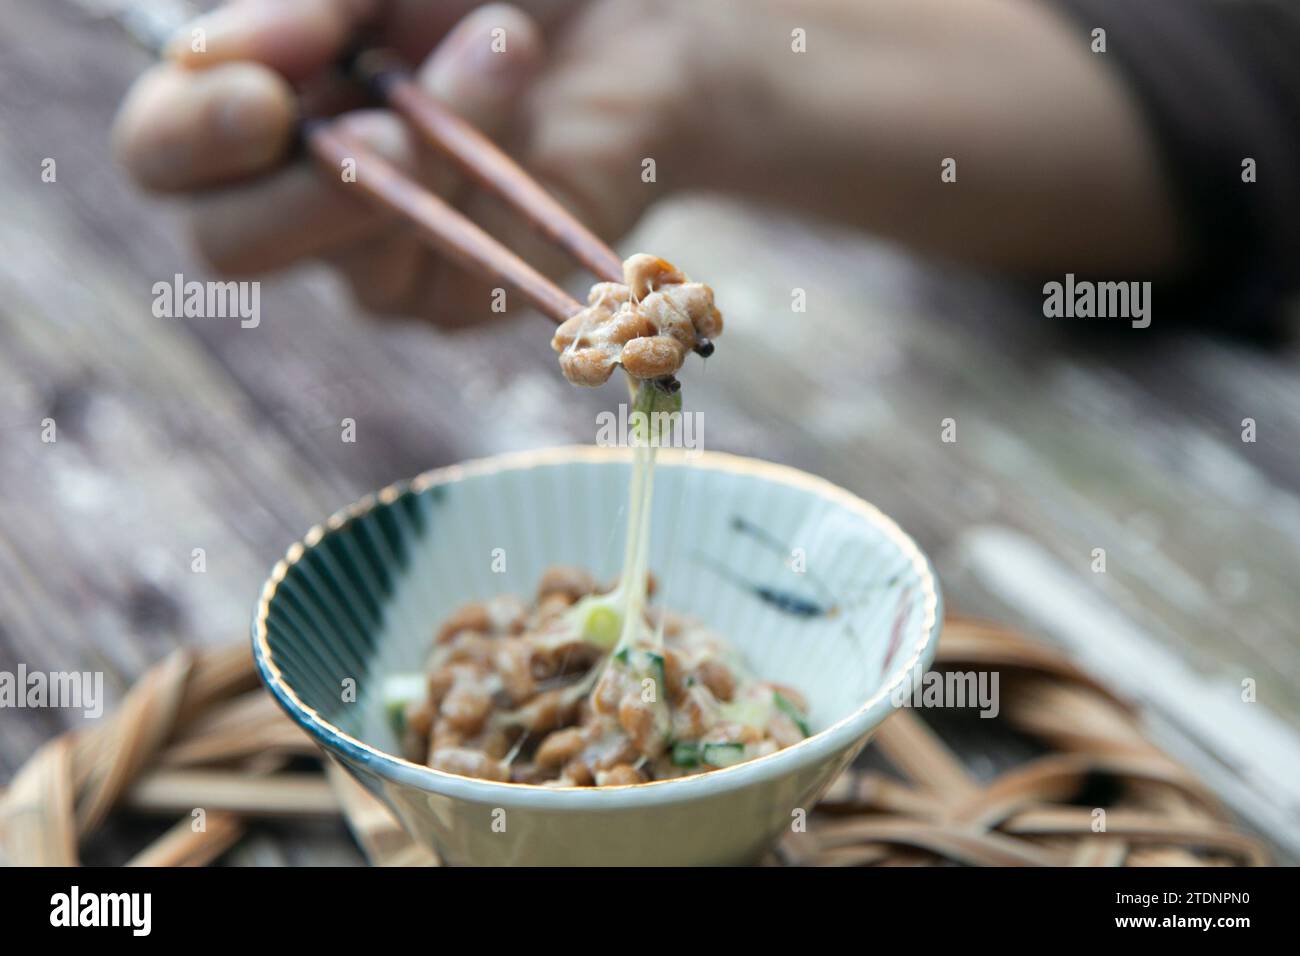 Nattō, nato ou hiragana est un aliment traditionnel japonais à base de soja fermenté.aliment traditionnel japonais à base de soja fermenté. Banque D'Images